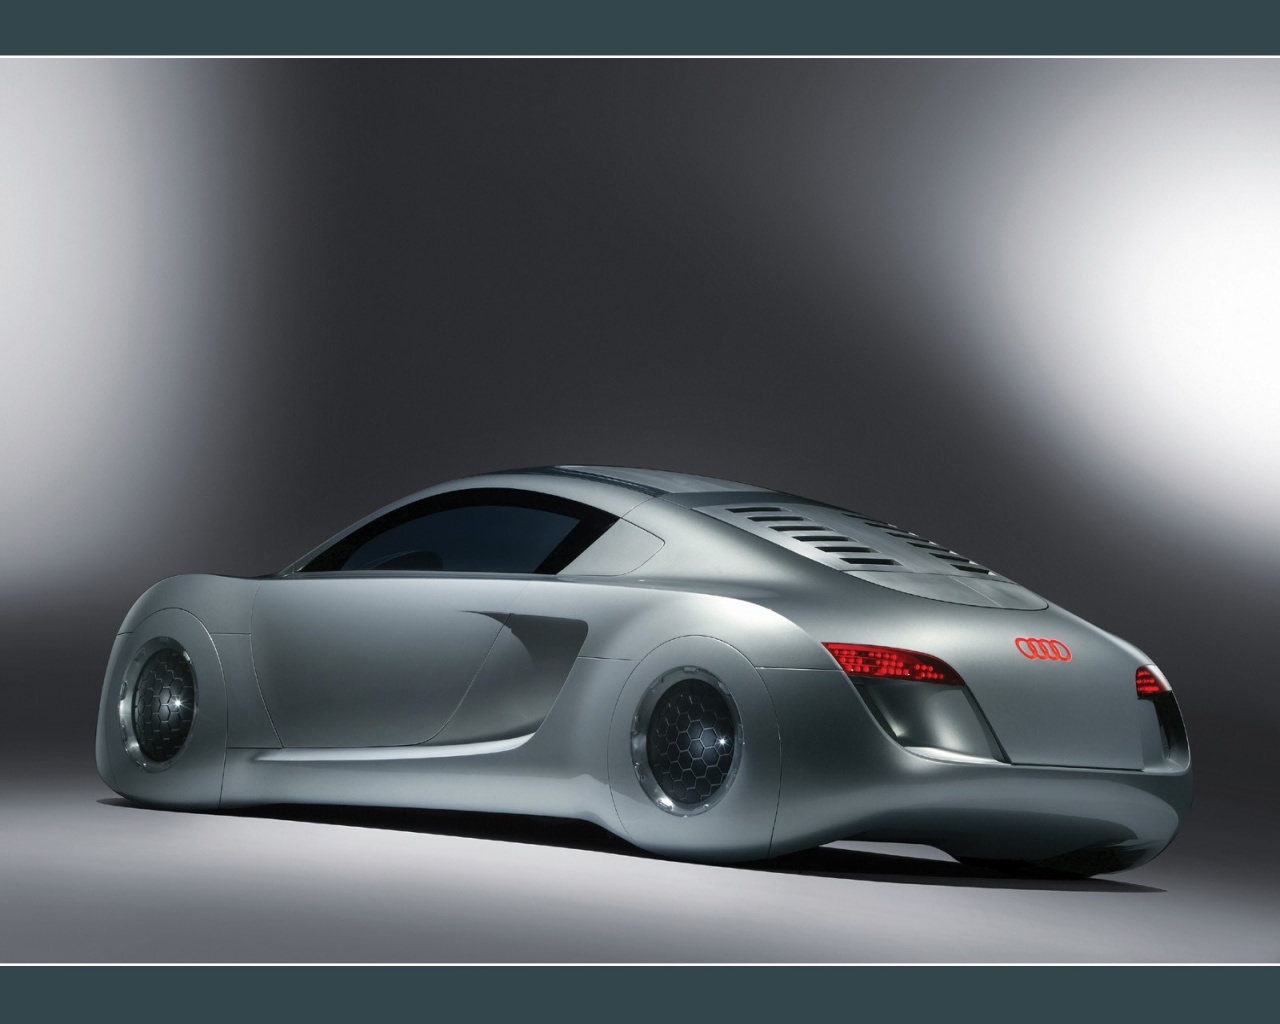 Silver Audi RSQ concept